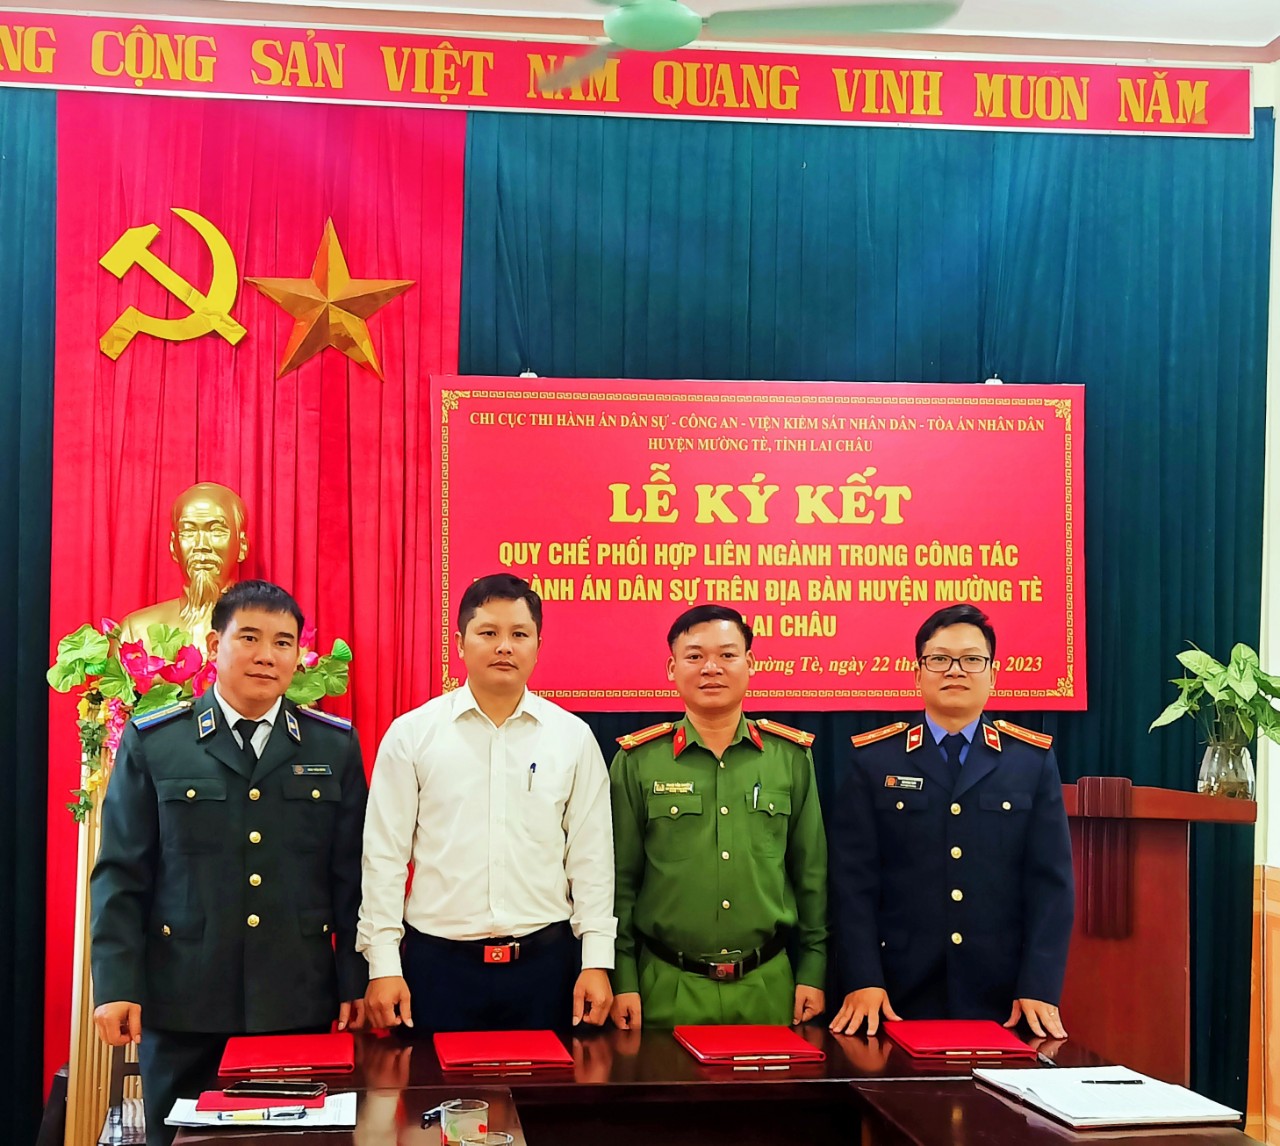 Chi cục Thi hành án dân sự huyện Mường Tè, tỉnh Lai Châu ký kết Quy chế phối hợp liên ngành trong công tác Thi hành án dân sự trên địa bàn huyện Mường Tè